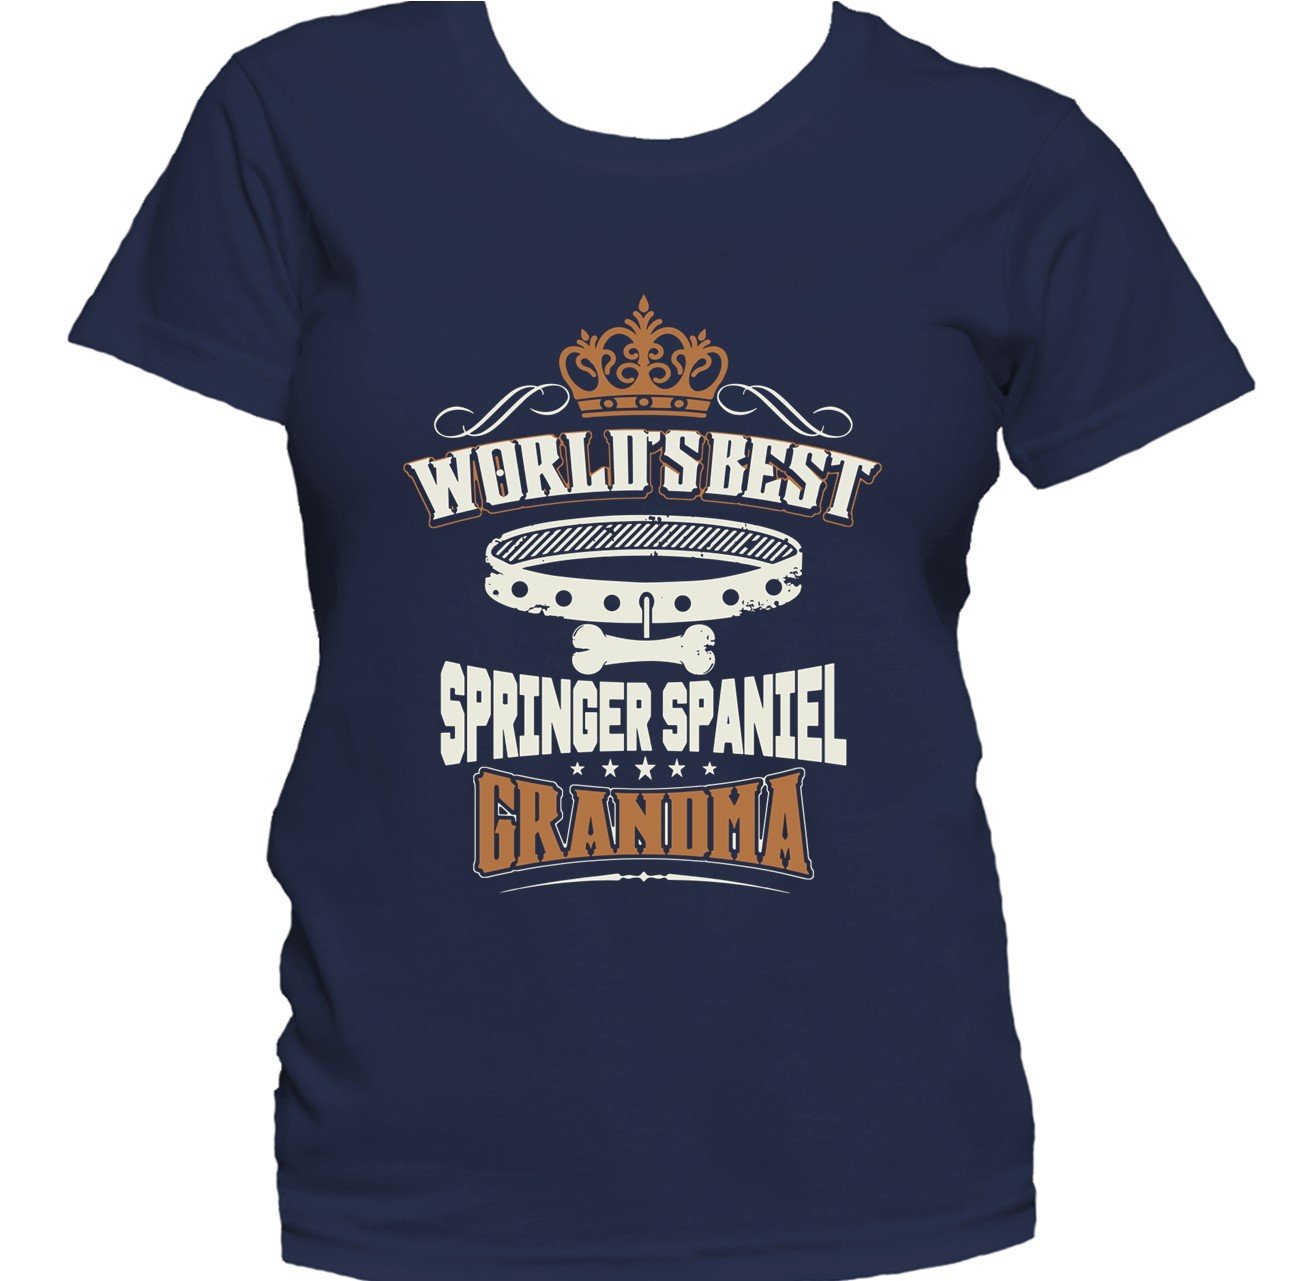 World's Best Springer Spaniel Grandma Women's T-Shirt